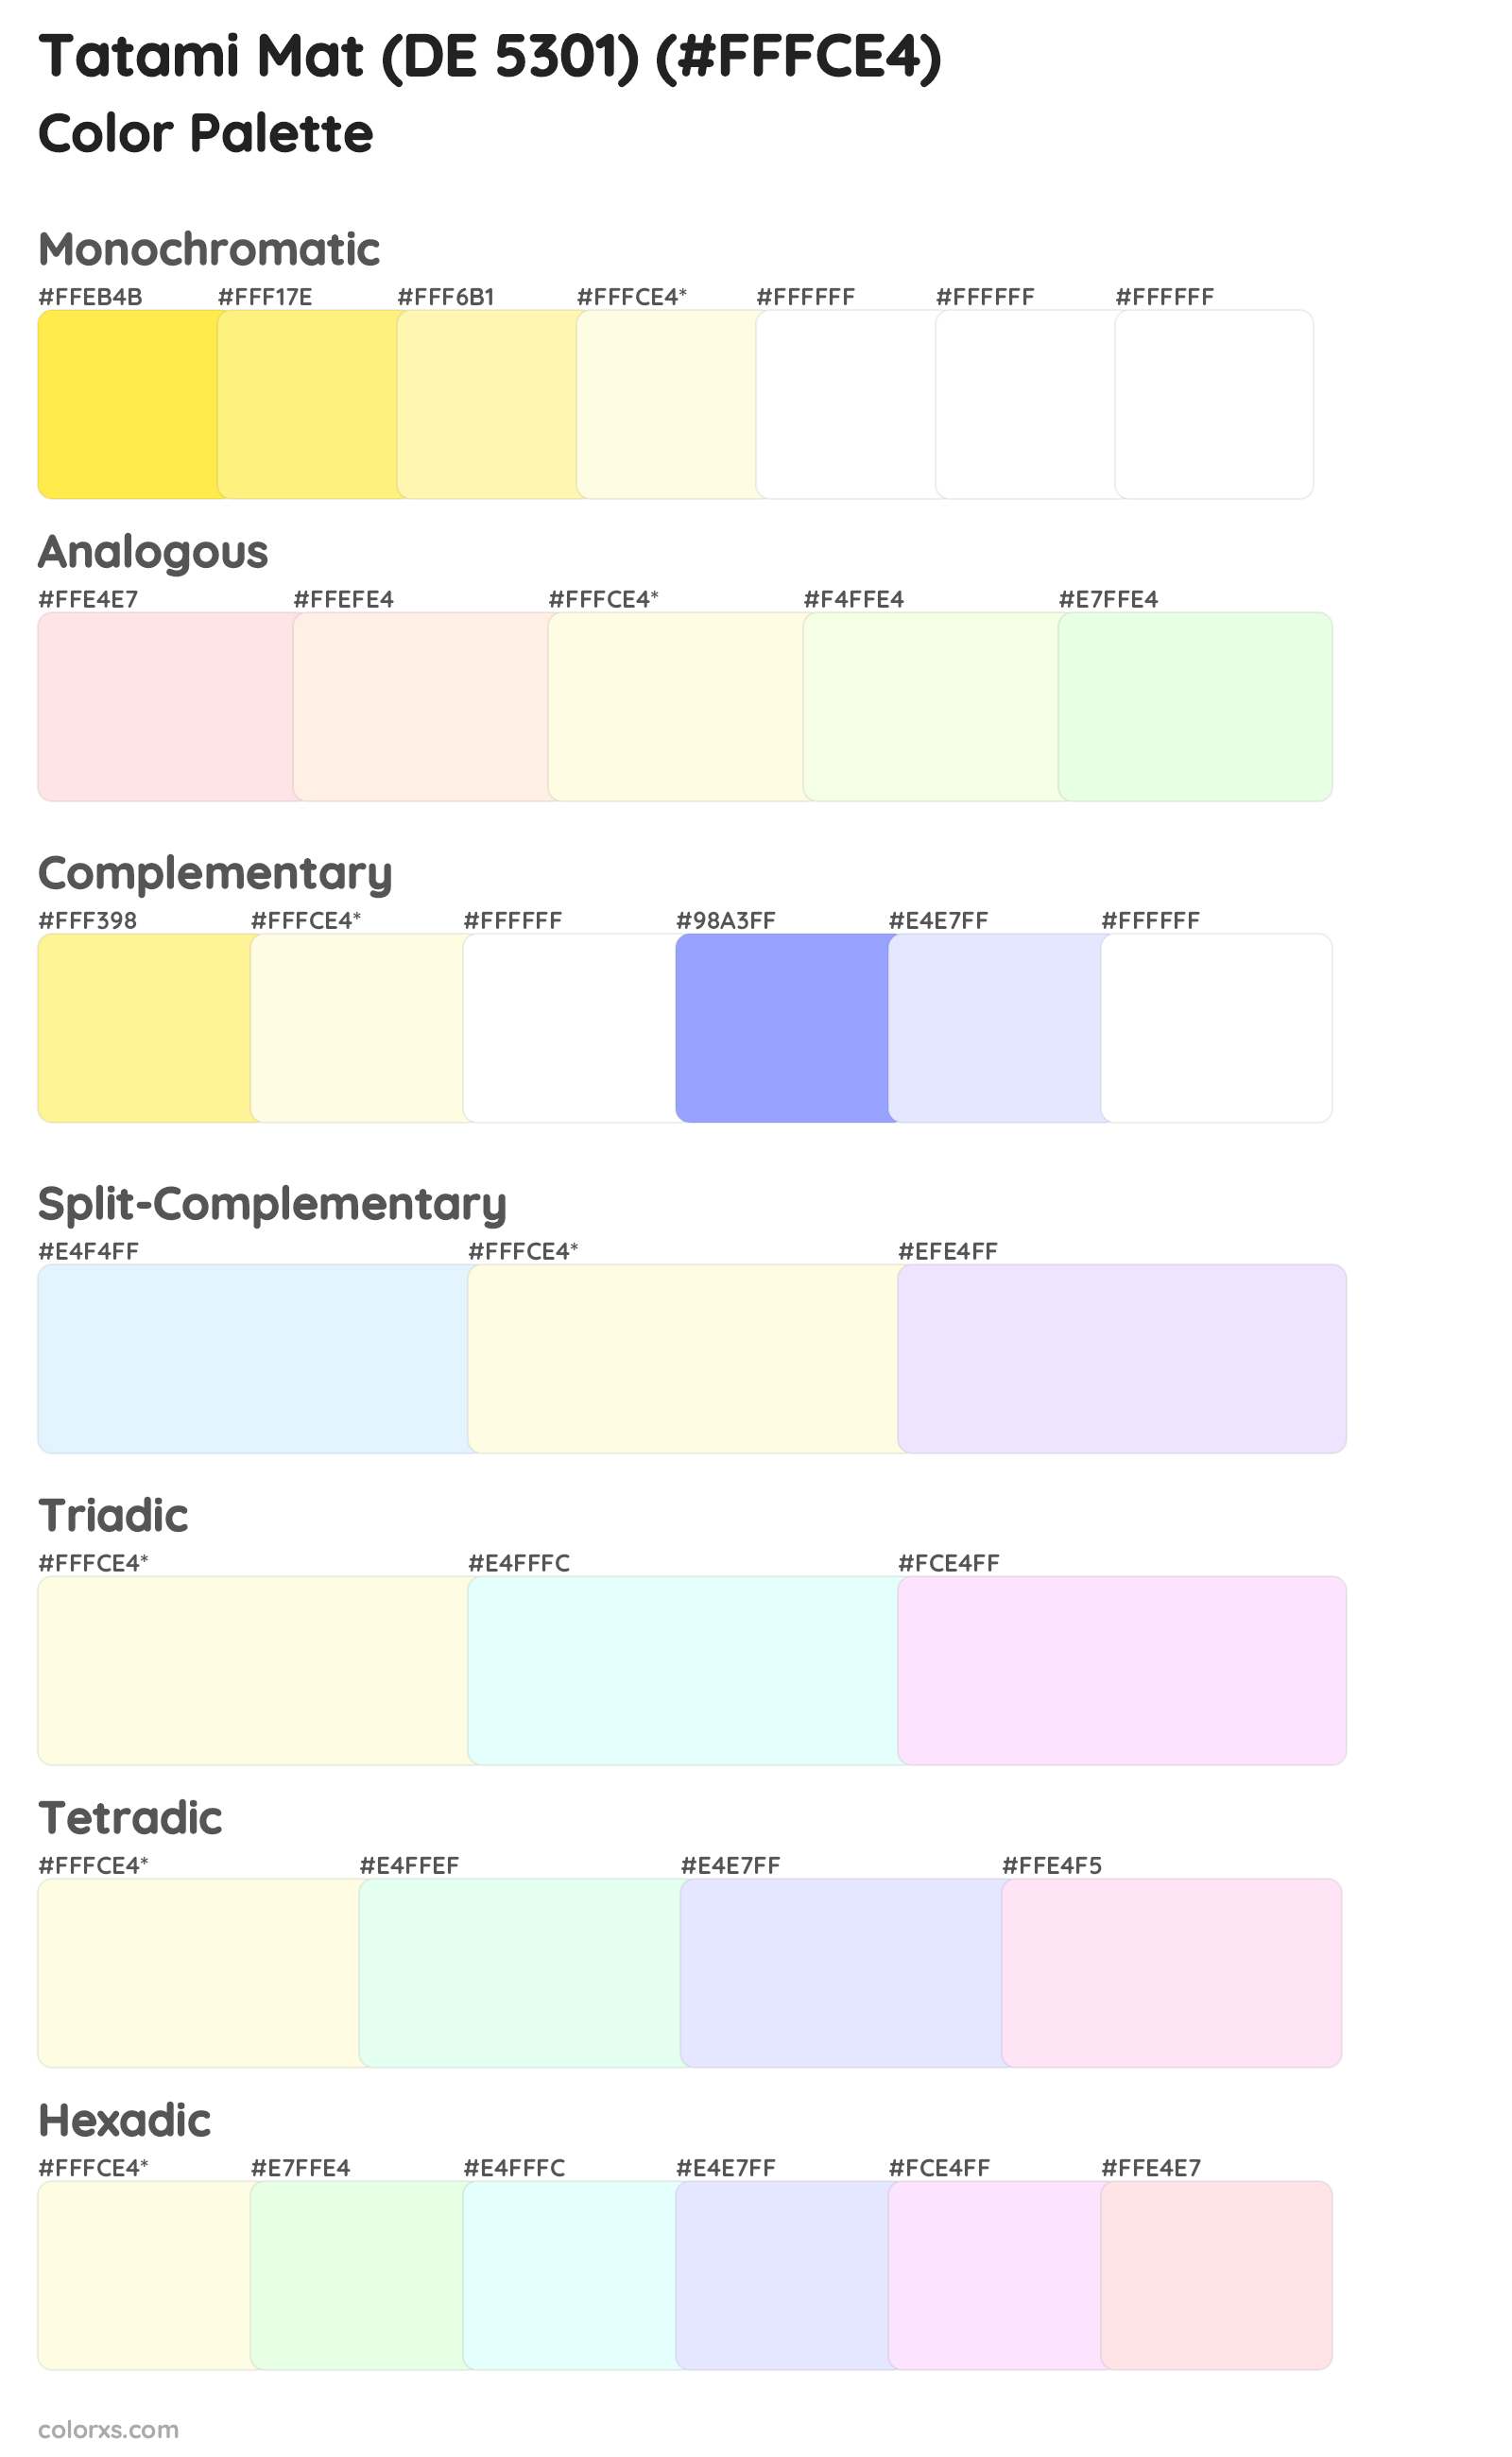 Tatami Mat (DE 5301) Color Scheme Palettes